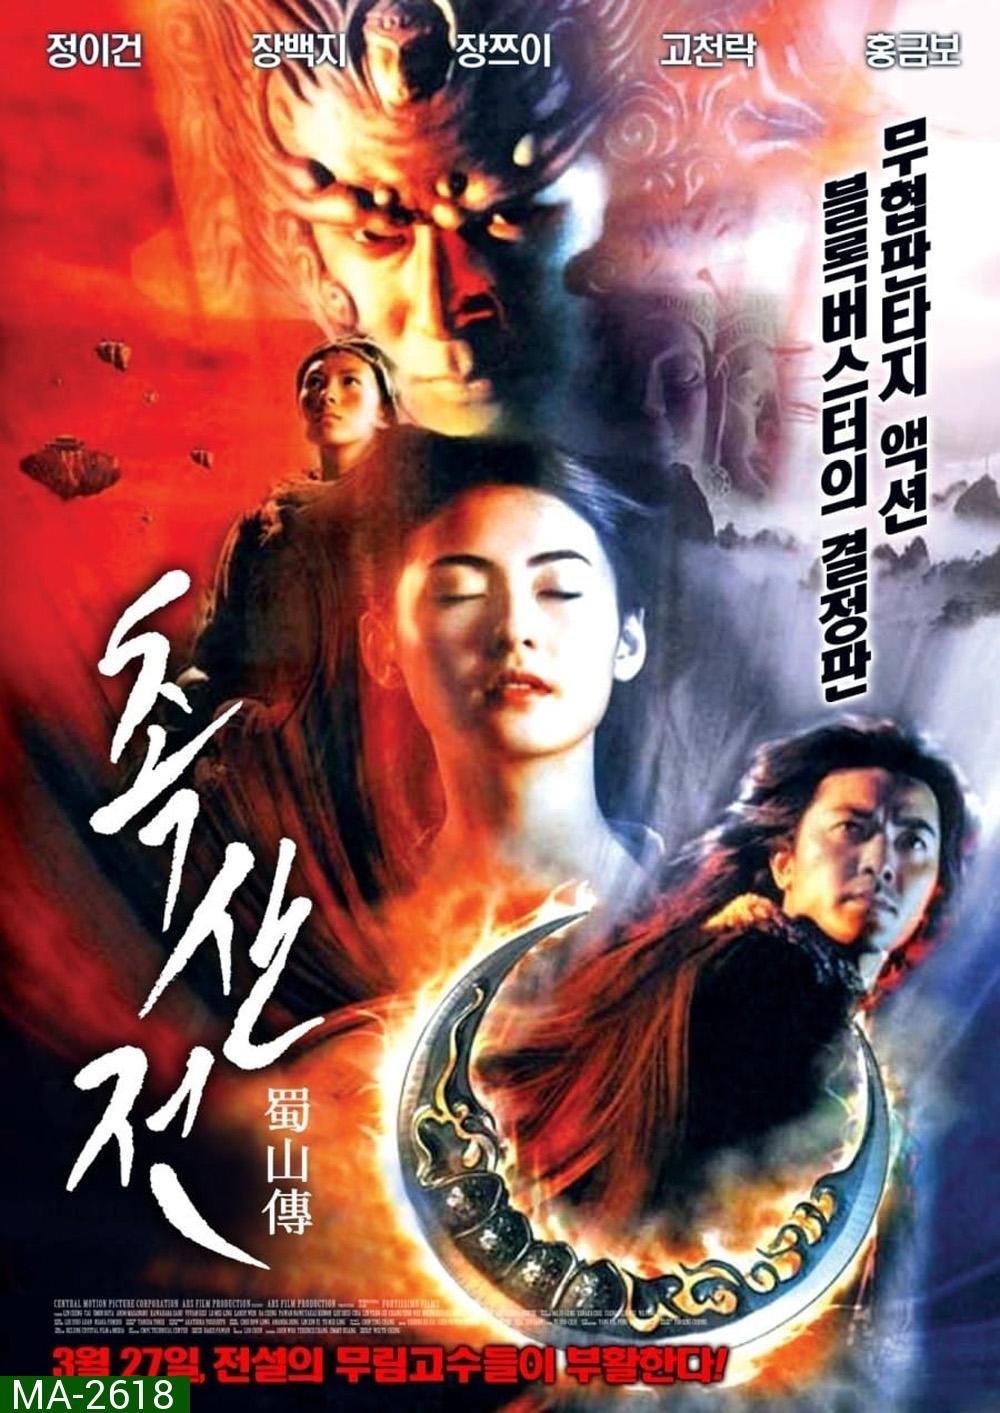 The Legend of Zu (2001) ซูซัน ศึกเทพยุทธถล่มฟ้า